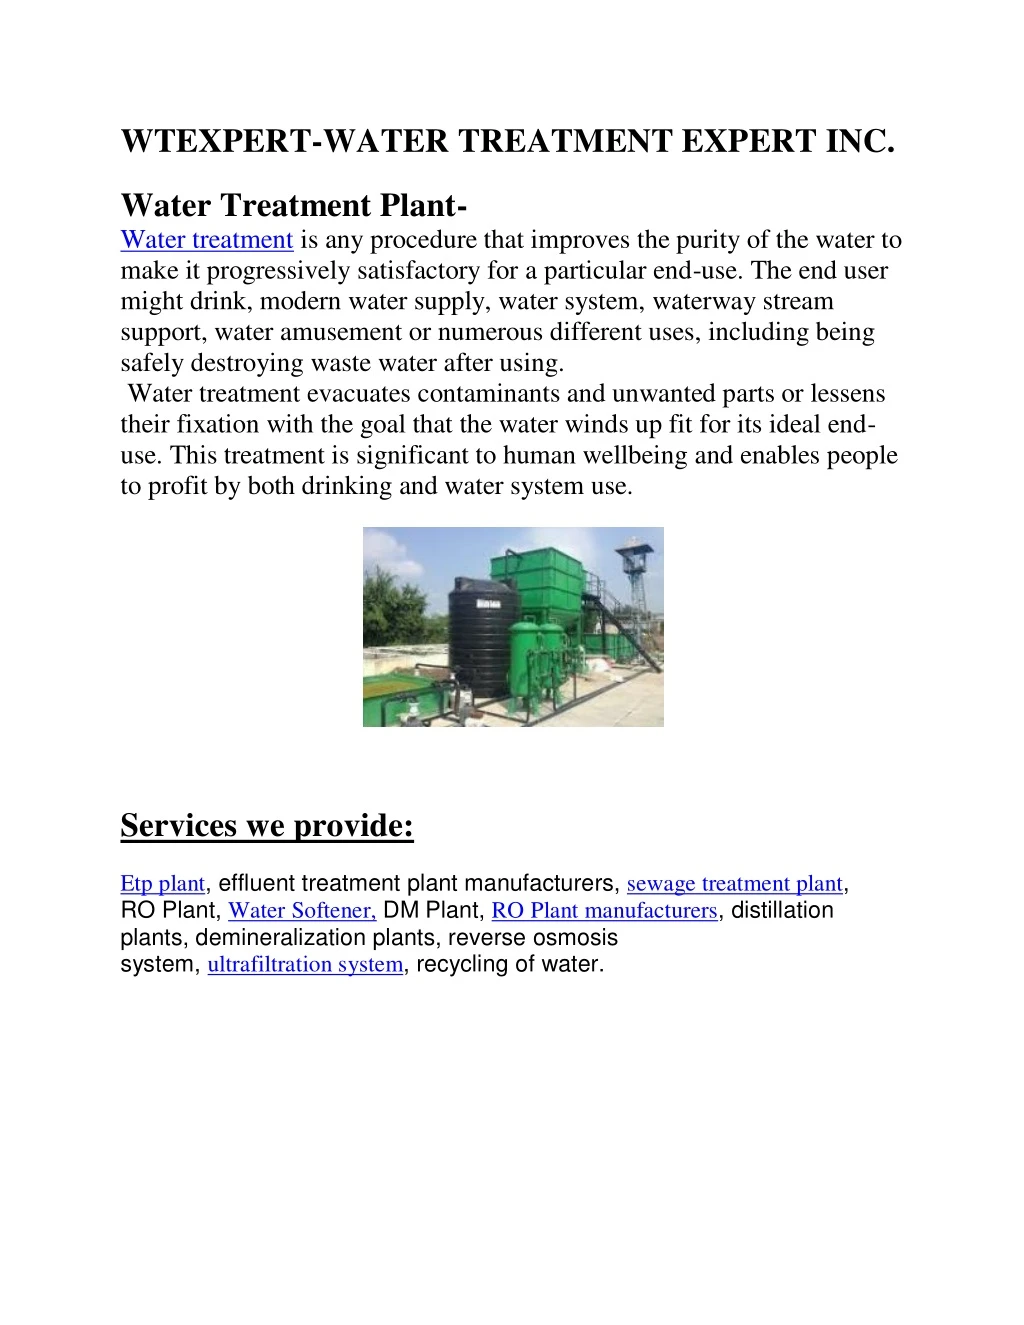 wtexpert water treatment expert inc water